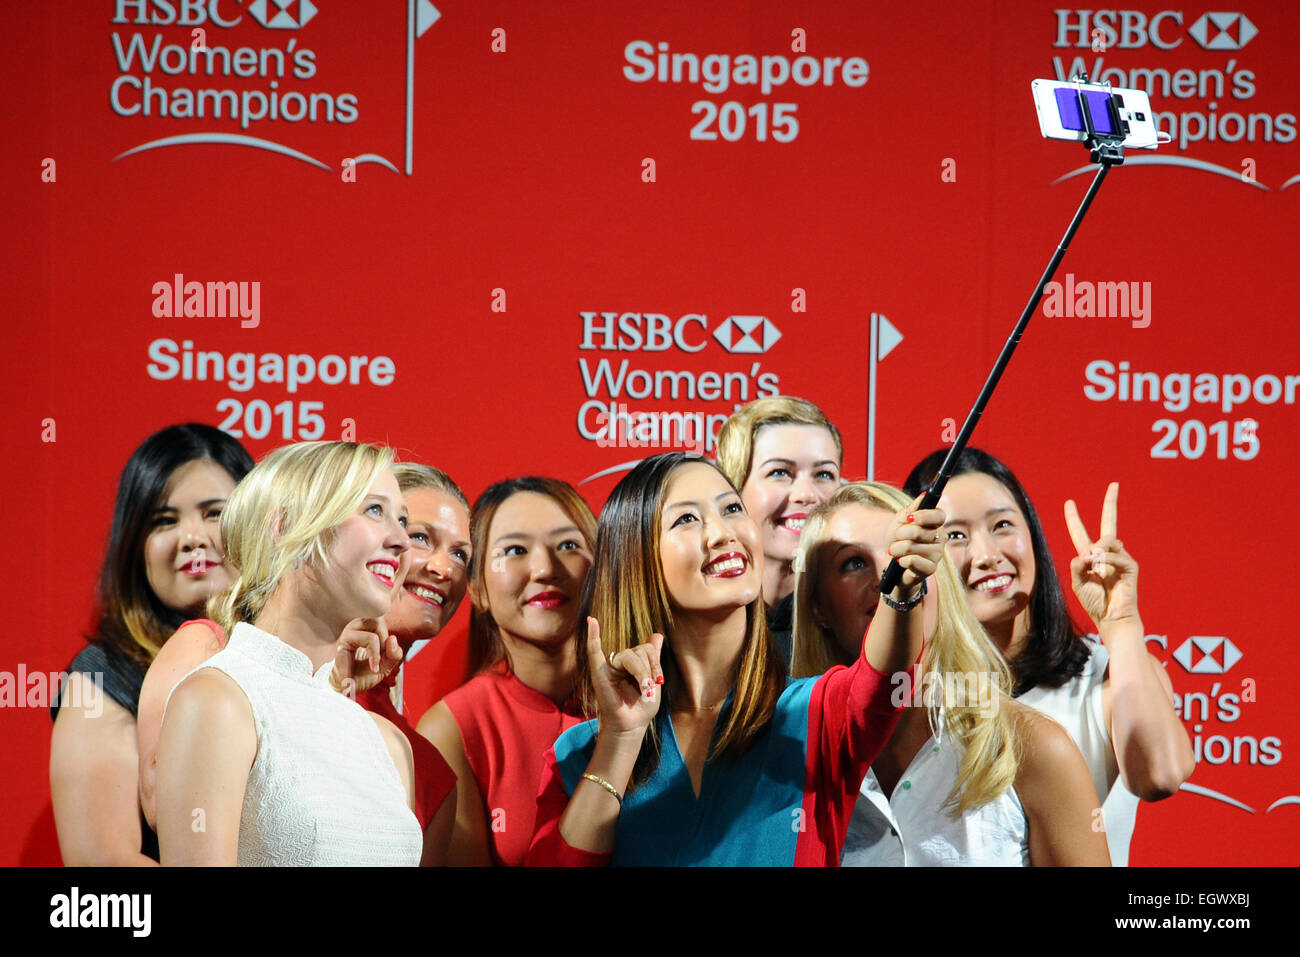 (150303) -- SINGAPOUR, 3 mars 2015 (Xinhua) -- Inbee Park de Corée du Sud, Jessica Korda des États-Unis, Suzann Pettersen de Suède, Lydia Ko de la Nouvelle-Zélande, Michelle Wie des États-Unis, Paula Creamer de l'U.S, Anna Nordqvist de Suède et Chella Choi de Corée du Sud (de G à D) posent pour une photo de groupe lors d'un événement pré-compétition de HSBC Women's Champions tournoi de golf à Singapour, le 3 mars 2015. Women's Champions HSBC a tenu un événement pré-compétition à Singapour Raffles City Convention du mardi. (Xinhua/puis Chih Wey)(Xinhua/puis Chih Wey) Banque D'Images